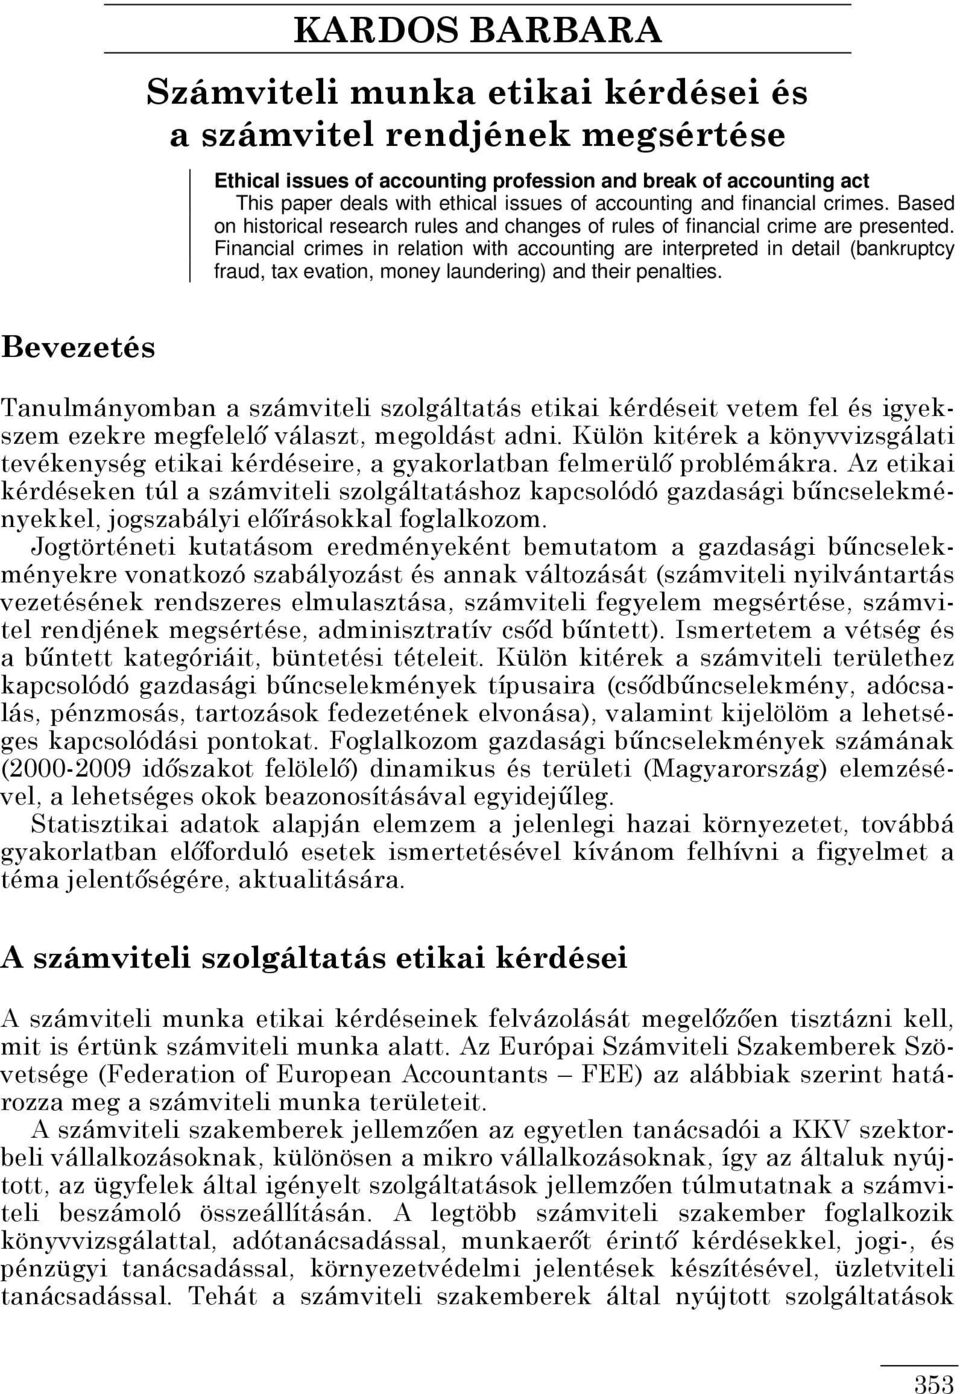 KARDOS BARBARA Számviteli munka etikai kérdései és a számvitel rendjének  megsértése - PDF Ingyenes letöltés